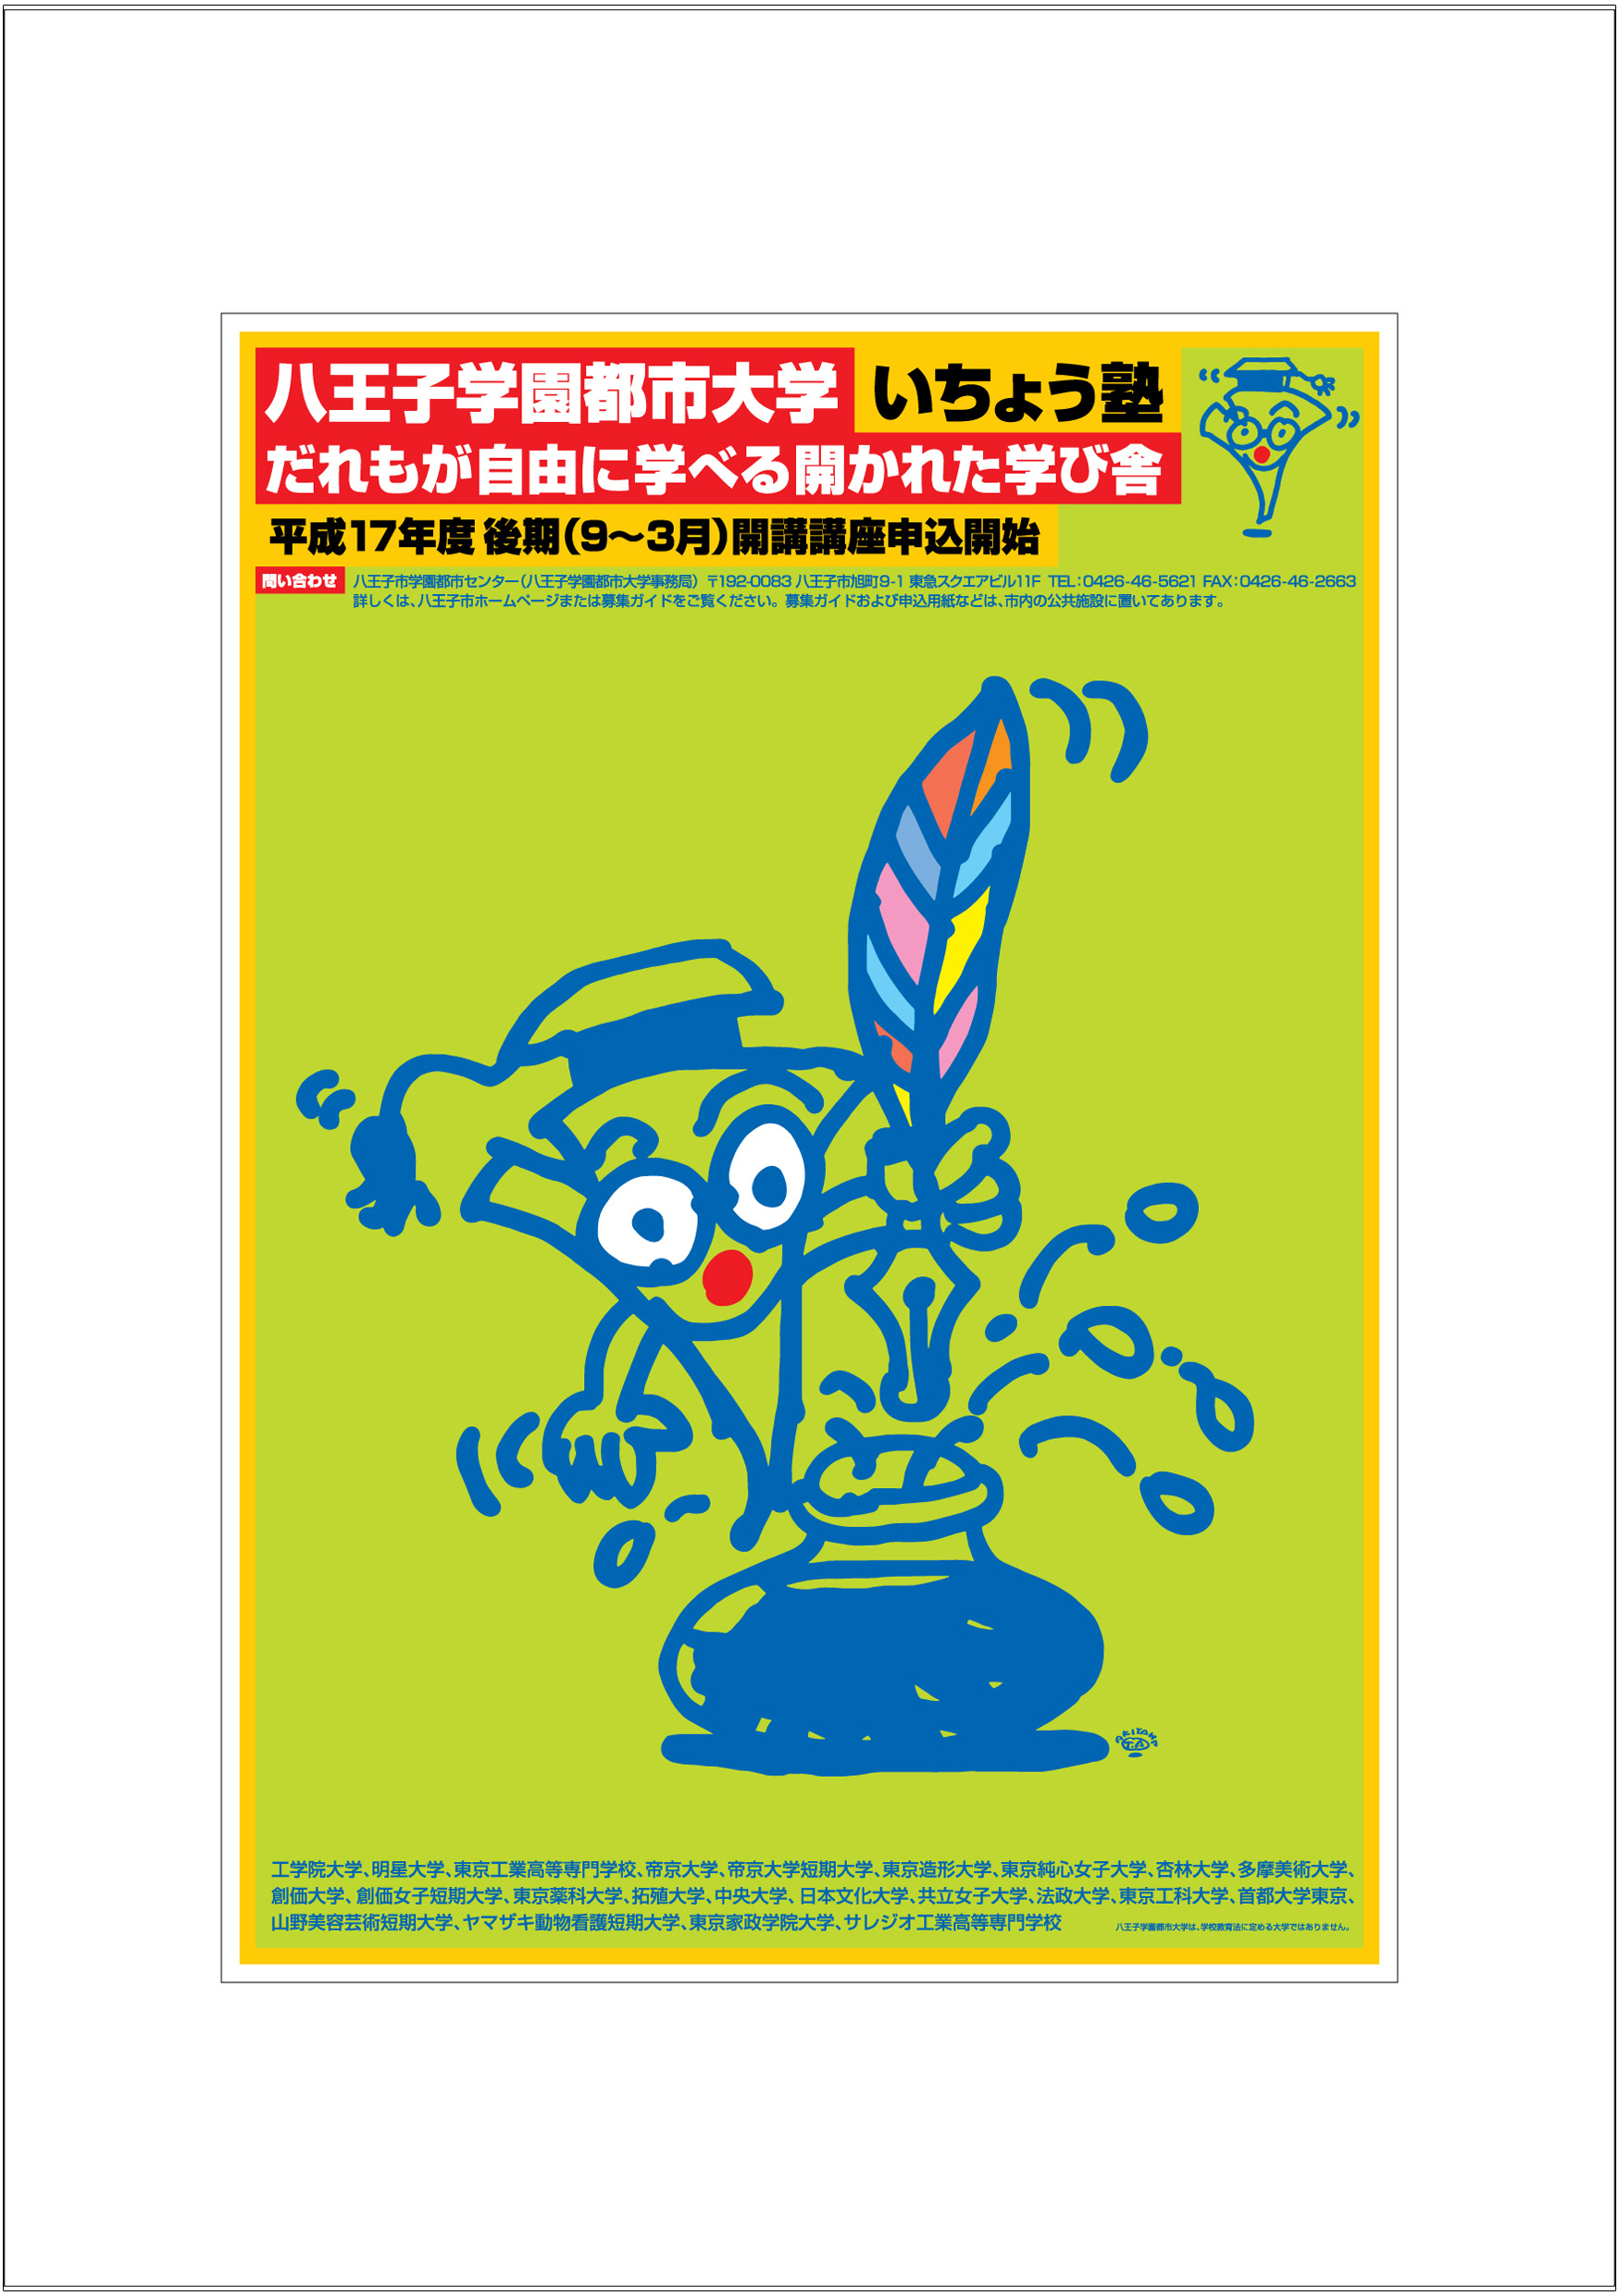 ポスターアーティスト秋山孝が2005年に制作したアートカード「アートカード ポスター 2005 07」